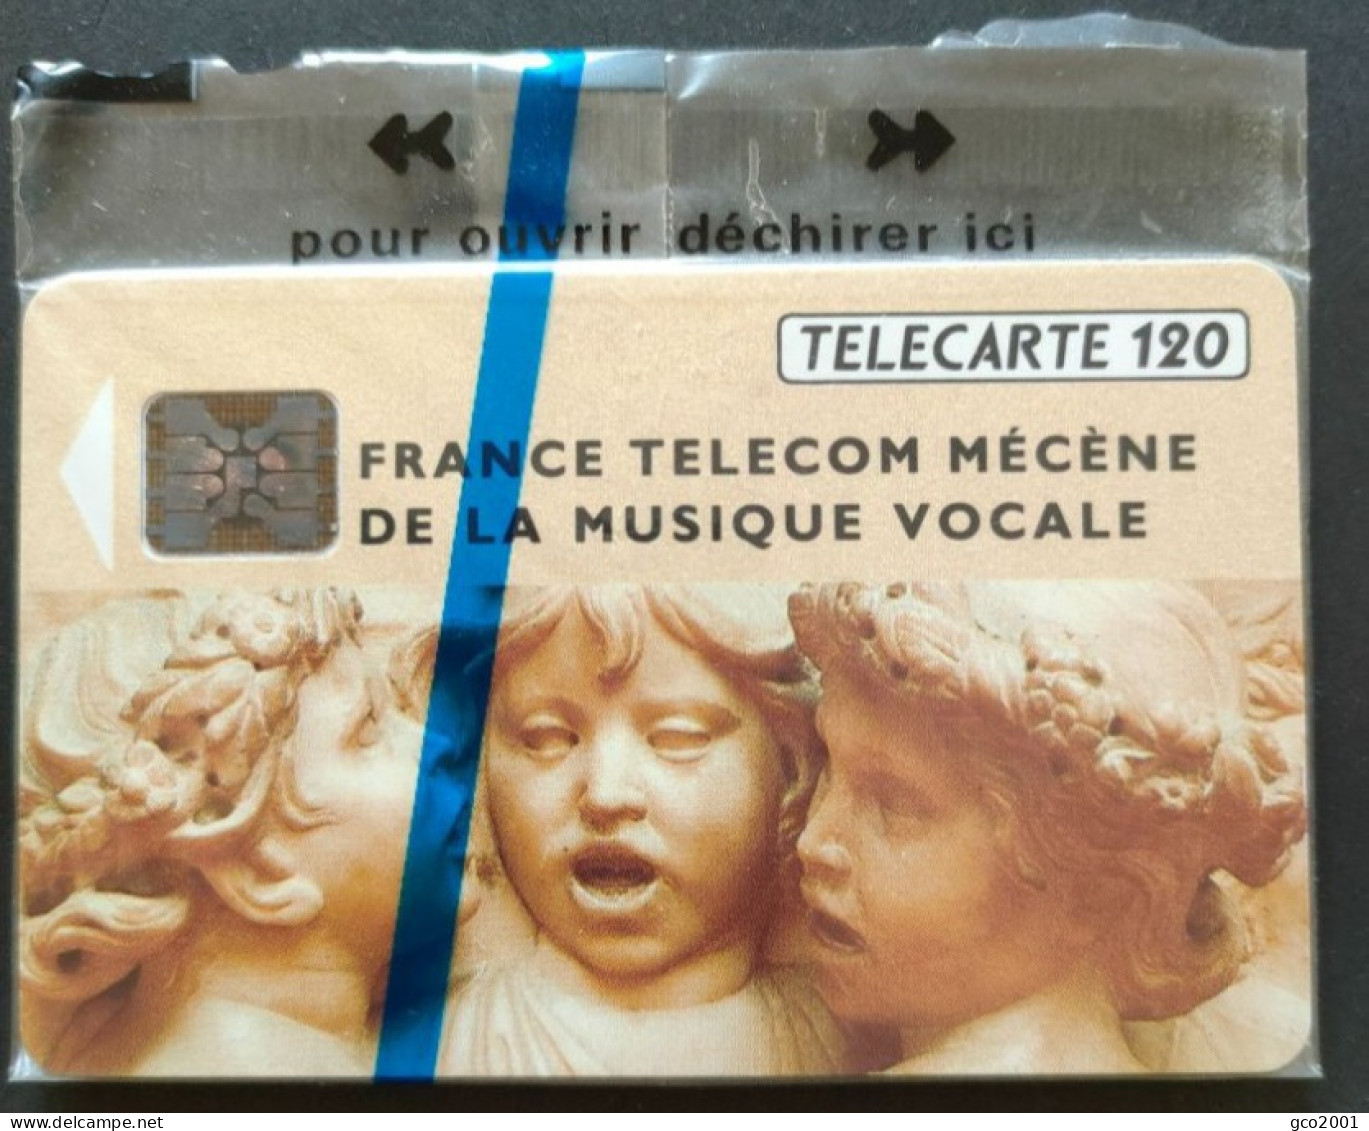 TELECARTE PUBLIQUE FRANCE F292A - FRANCE TELECOM MECENE MUSIQUE VOCALE - 120 U - NSB - 1992